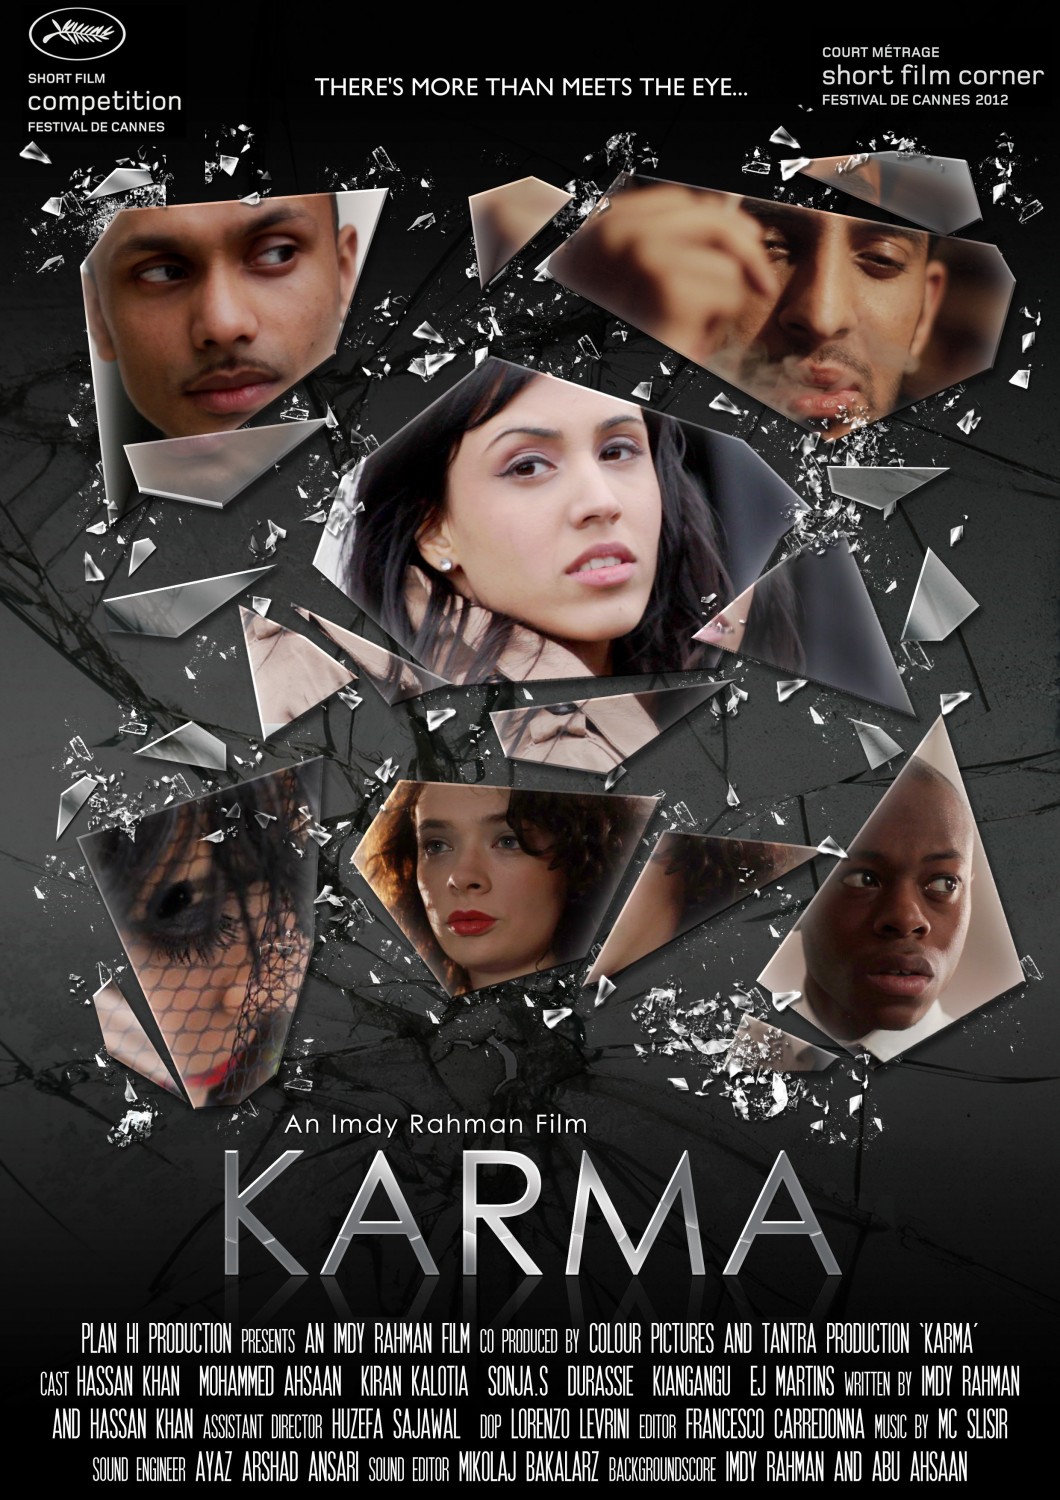 Karma Extra Large Movie Poster Image Movie Poster Awards